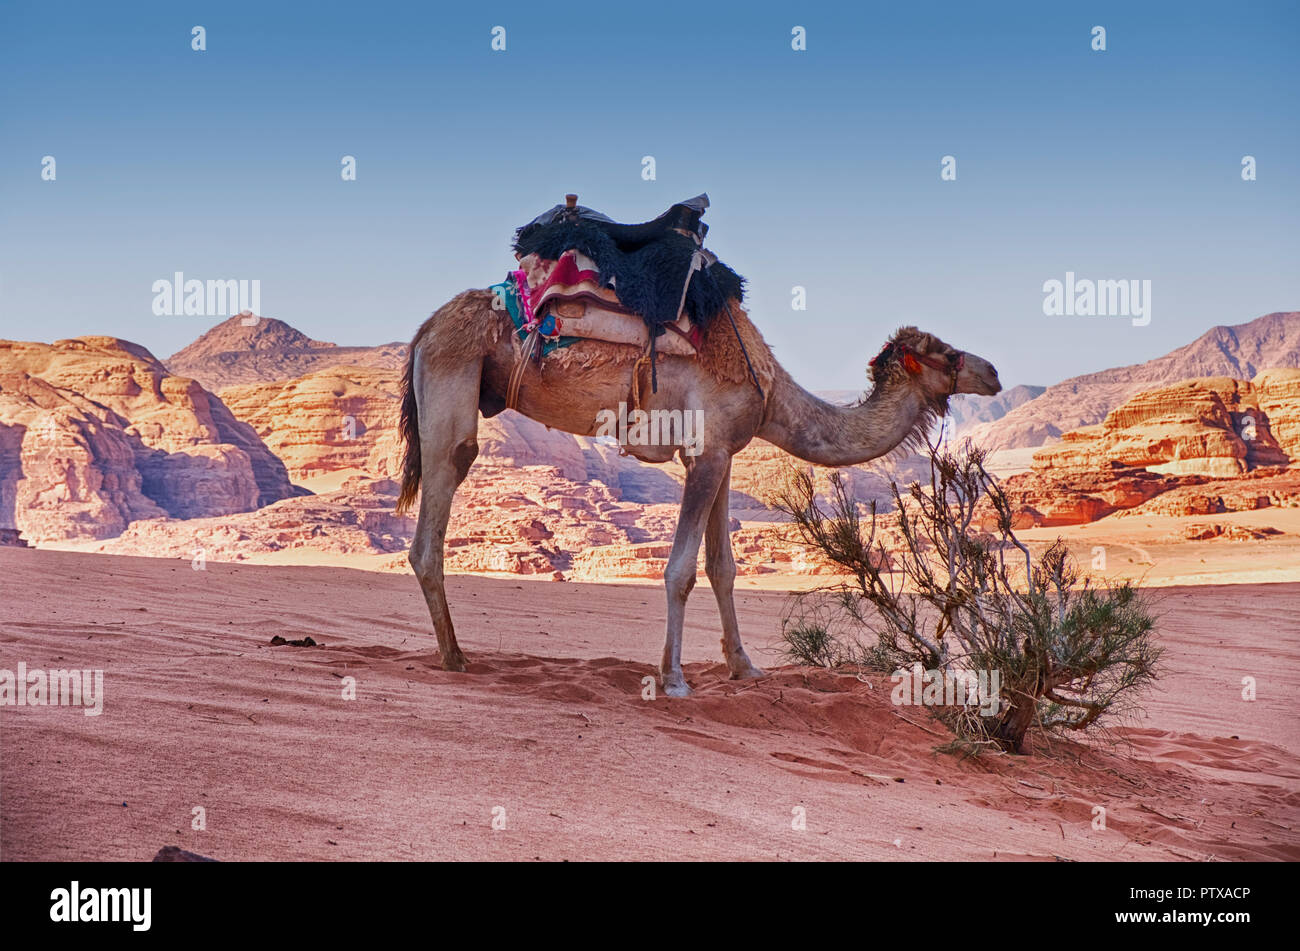 Un camello espera cerca de un arbusto aislado en medio de la arena y las montañas del desierto de Wadi Rum, en el sur de Jordania. Foto de stock